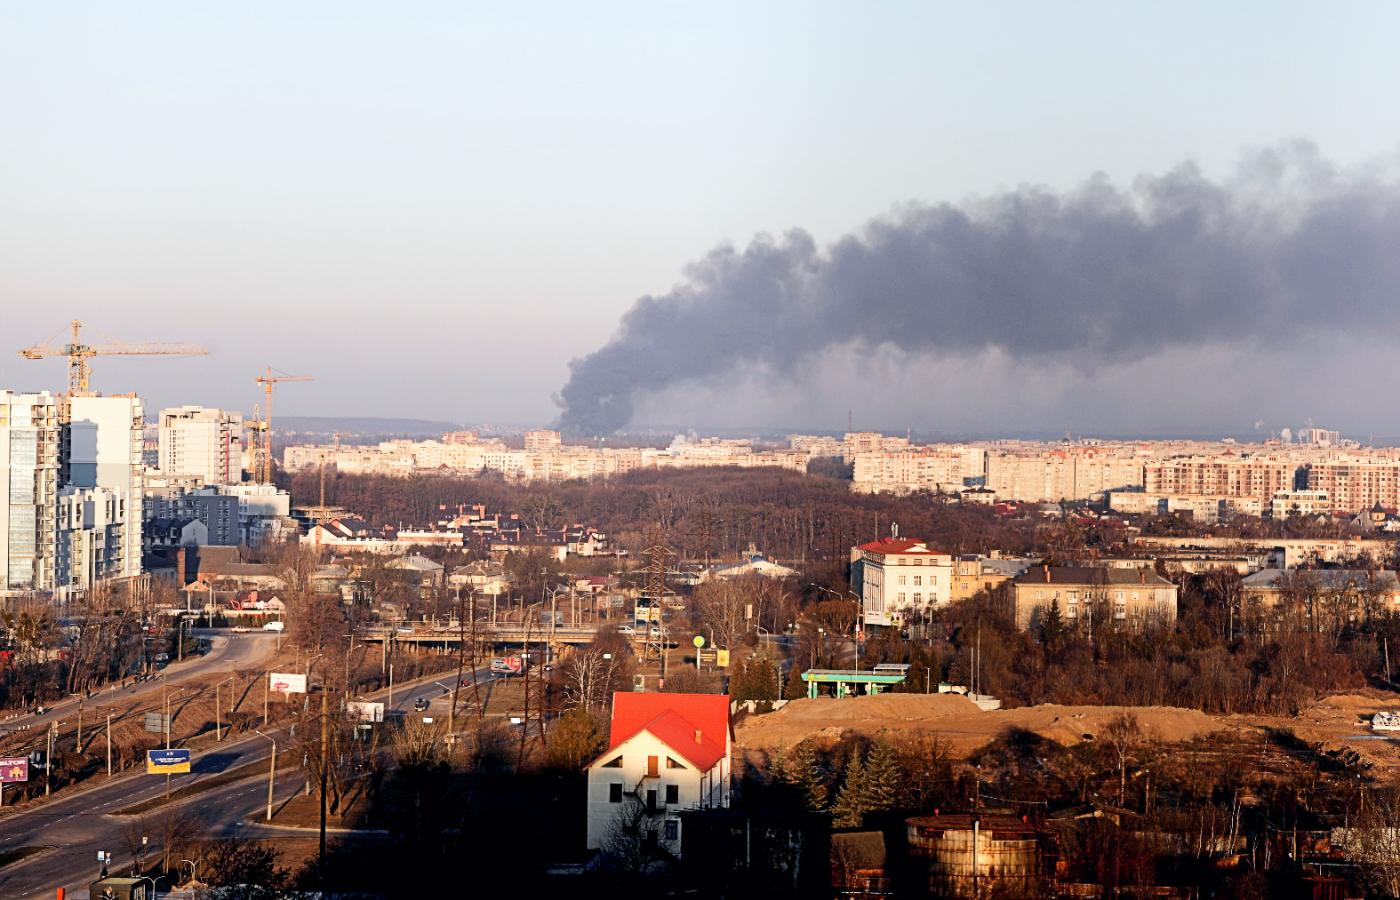 Atak na zakłady remontowe pod Lwowem, 18 marca 2022 r.